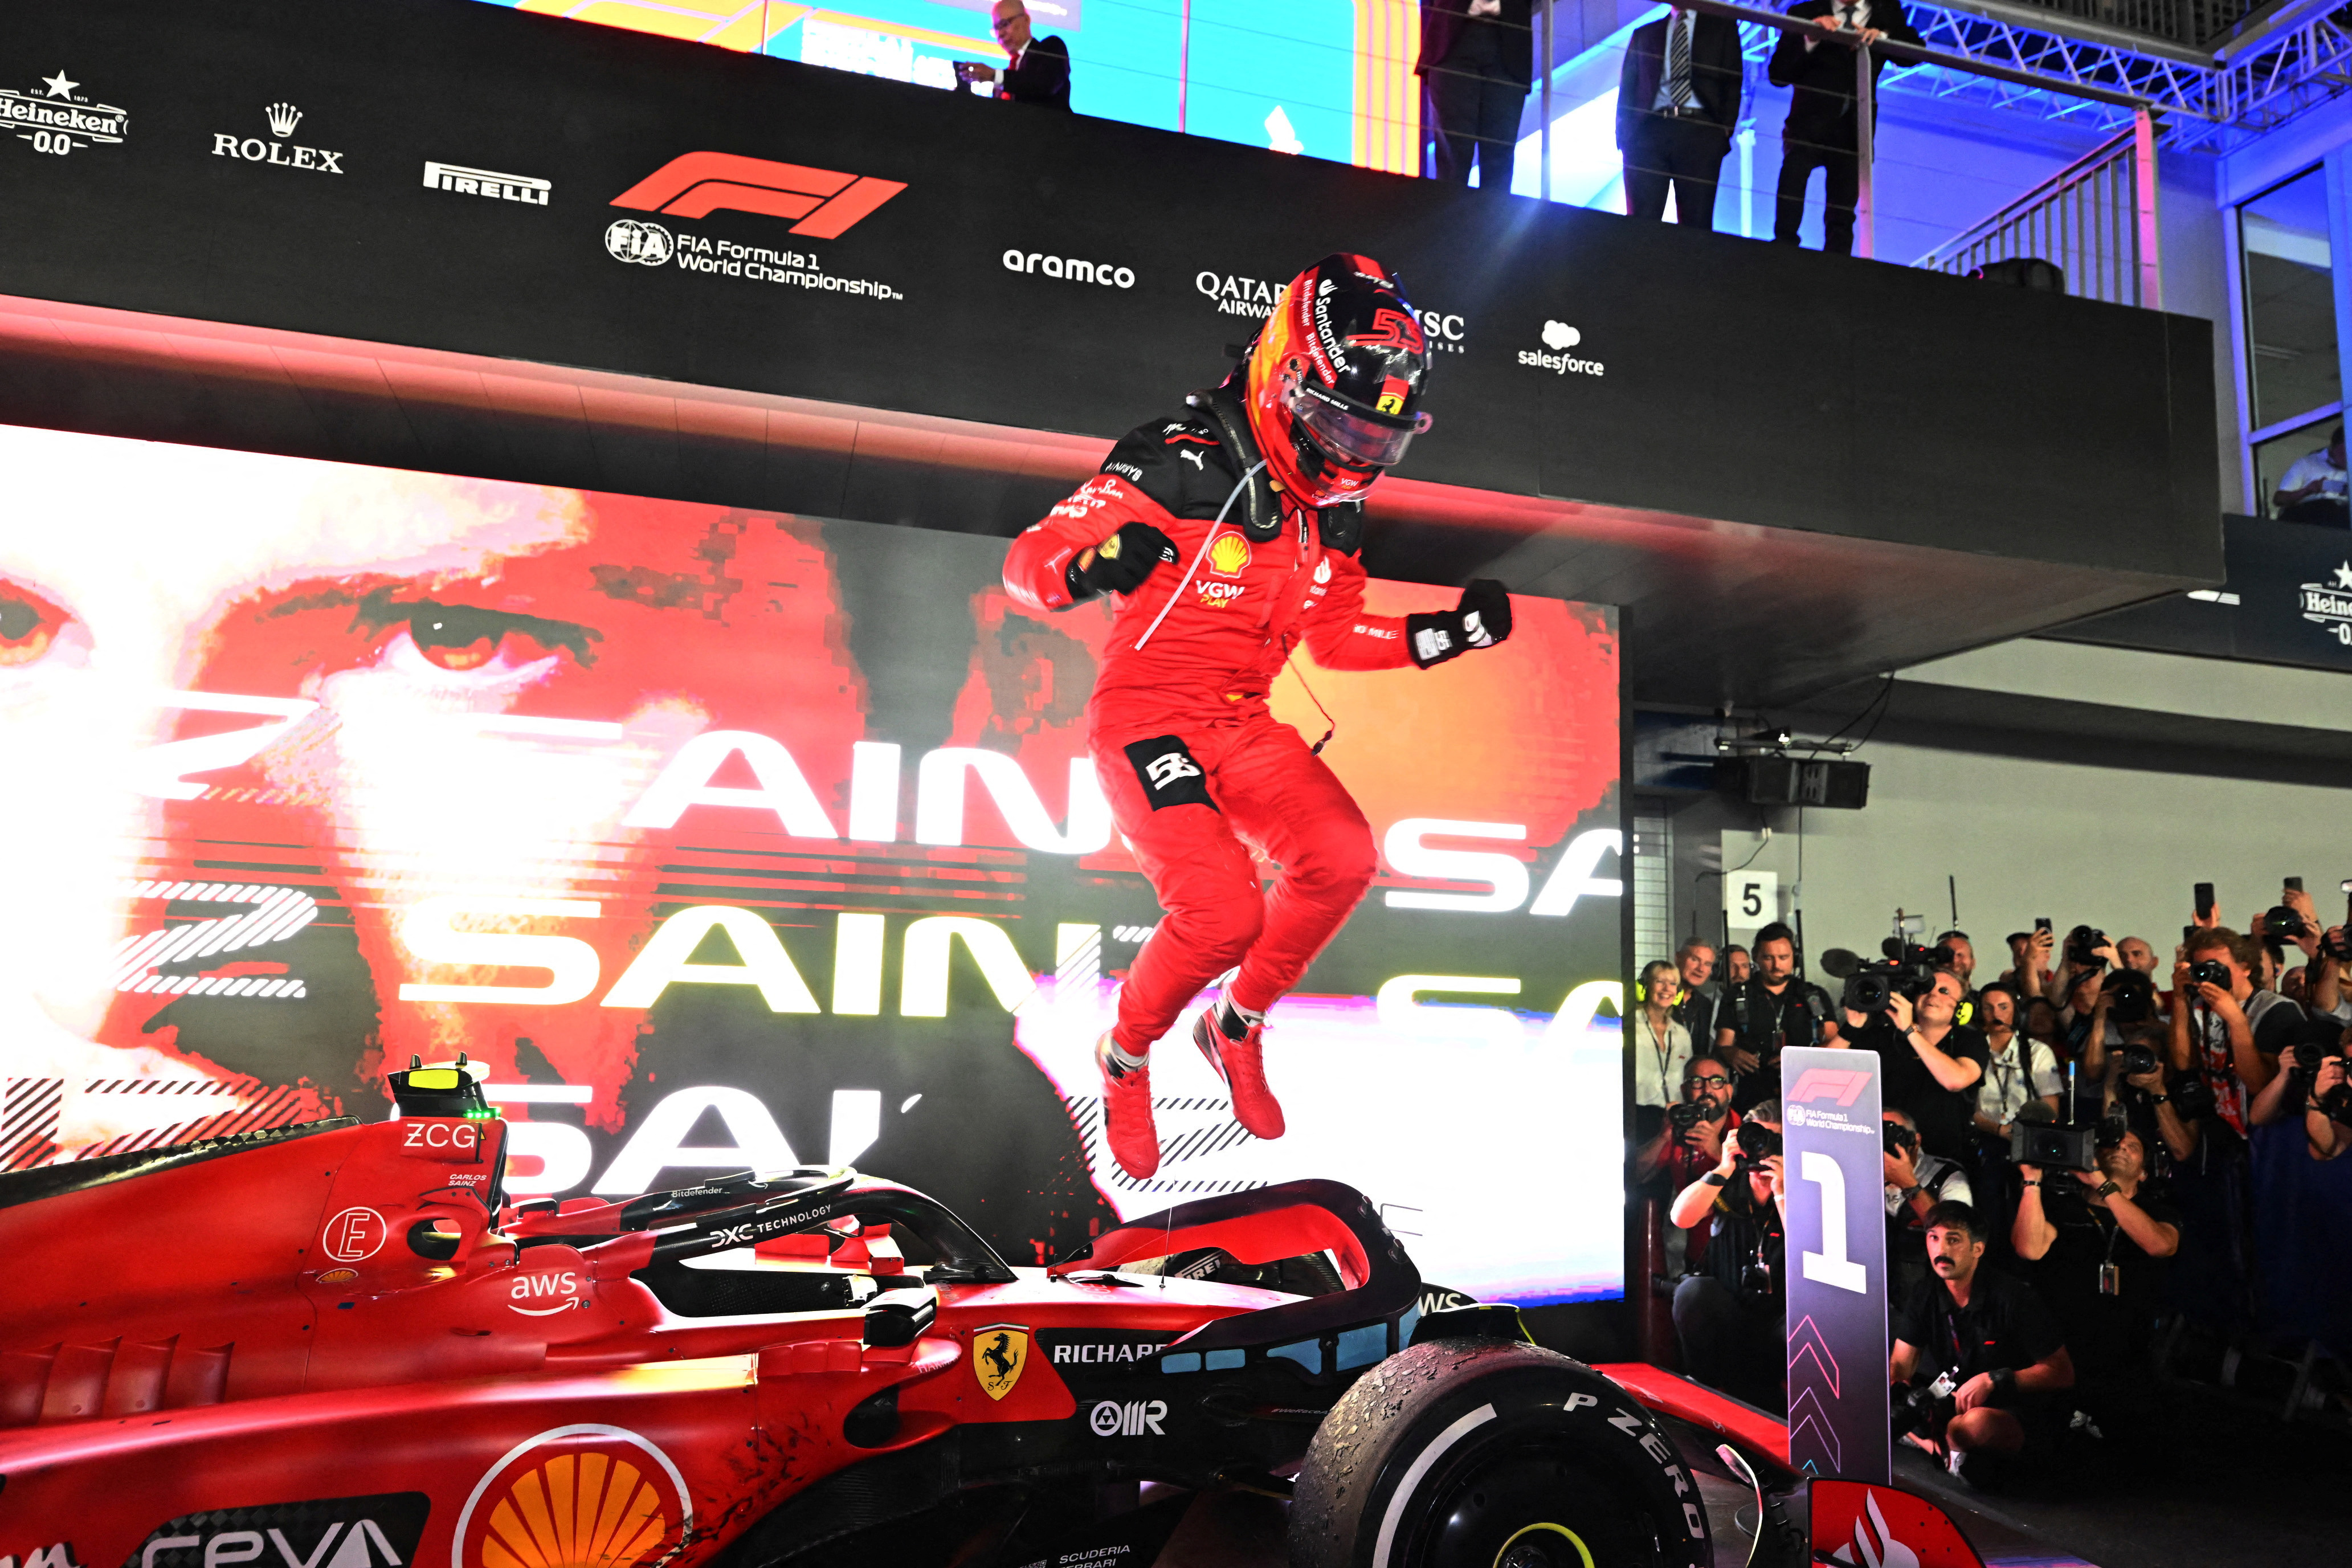 F1: com Red Bull em baixa, Ferrari fica na frente em Singapura